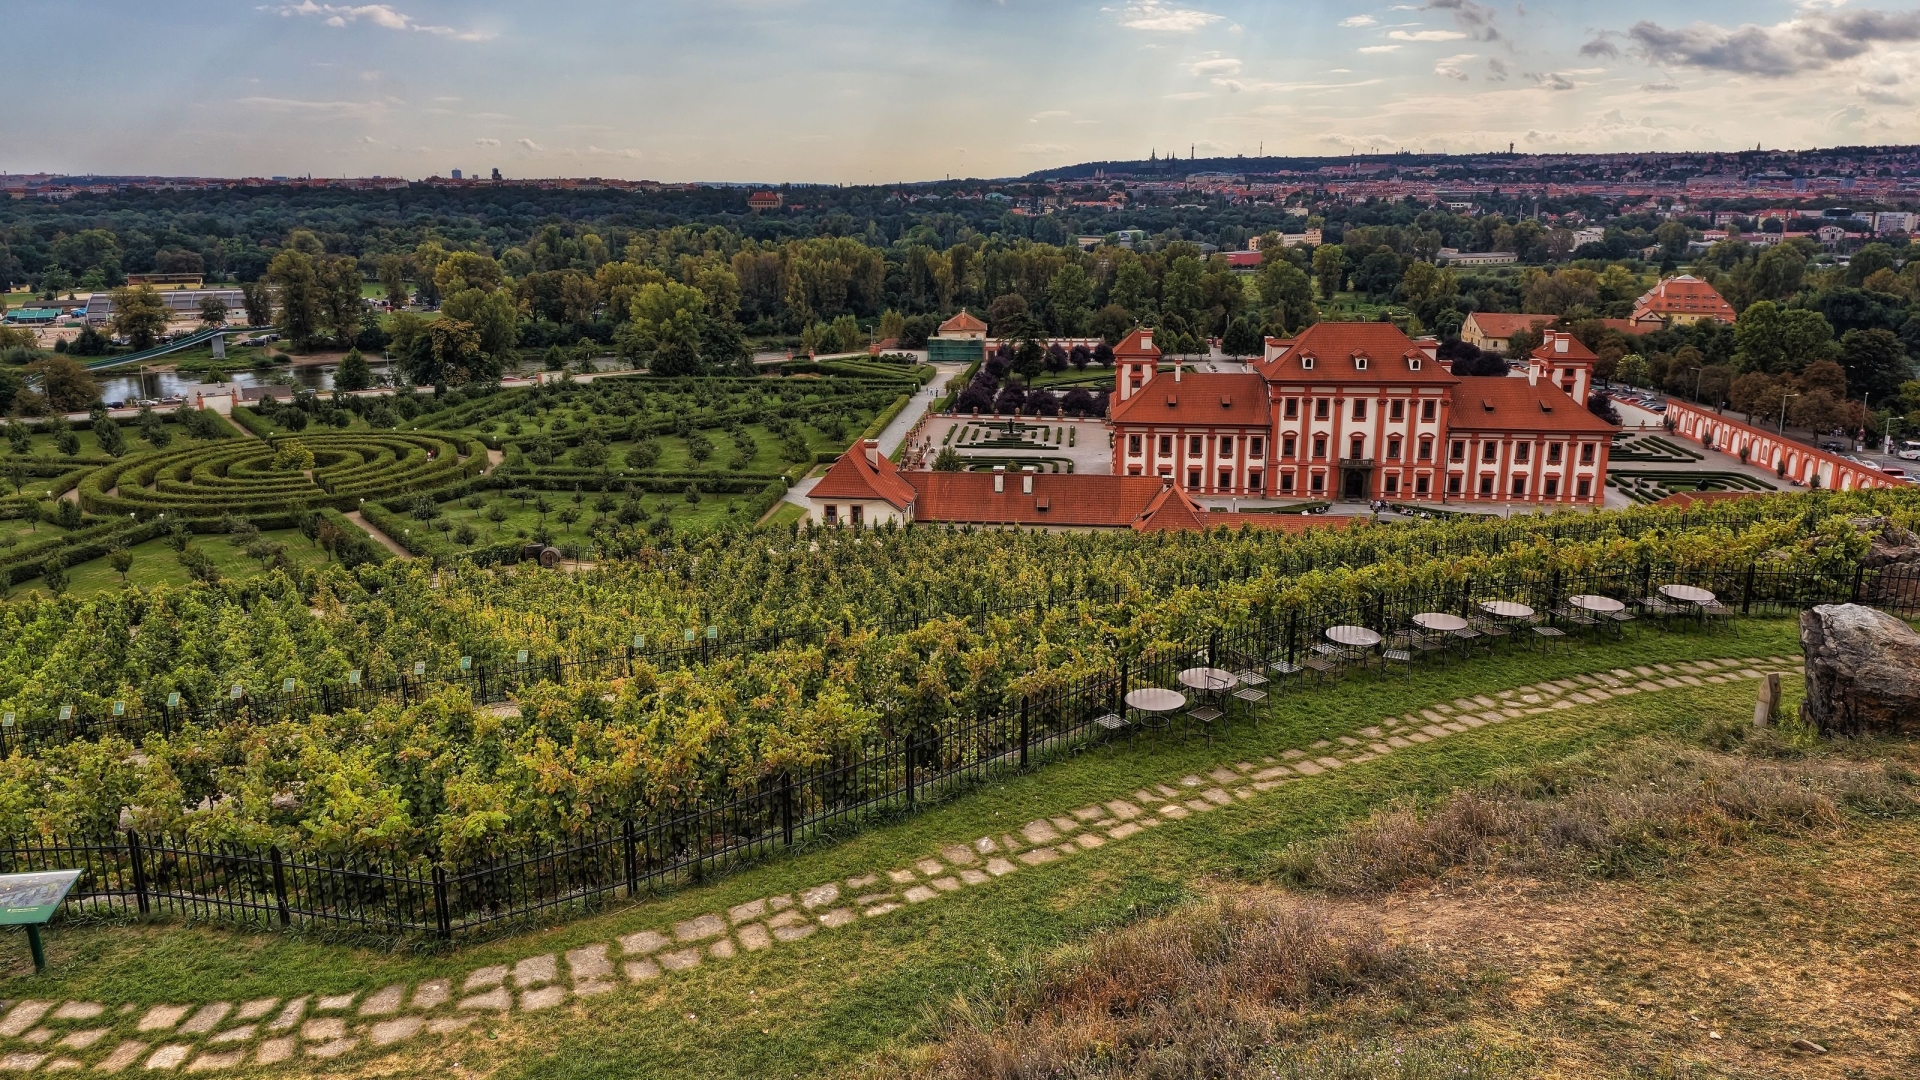 Botanical Garden Of The City Prague , HD Wallpaper & Backgrounds